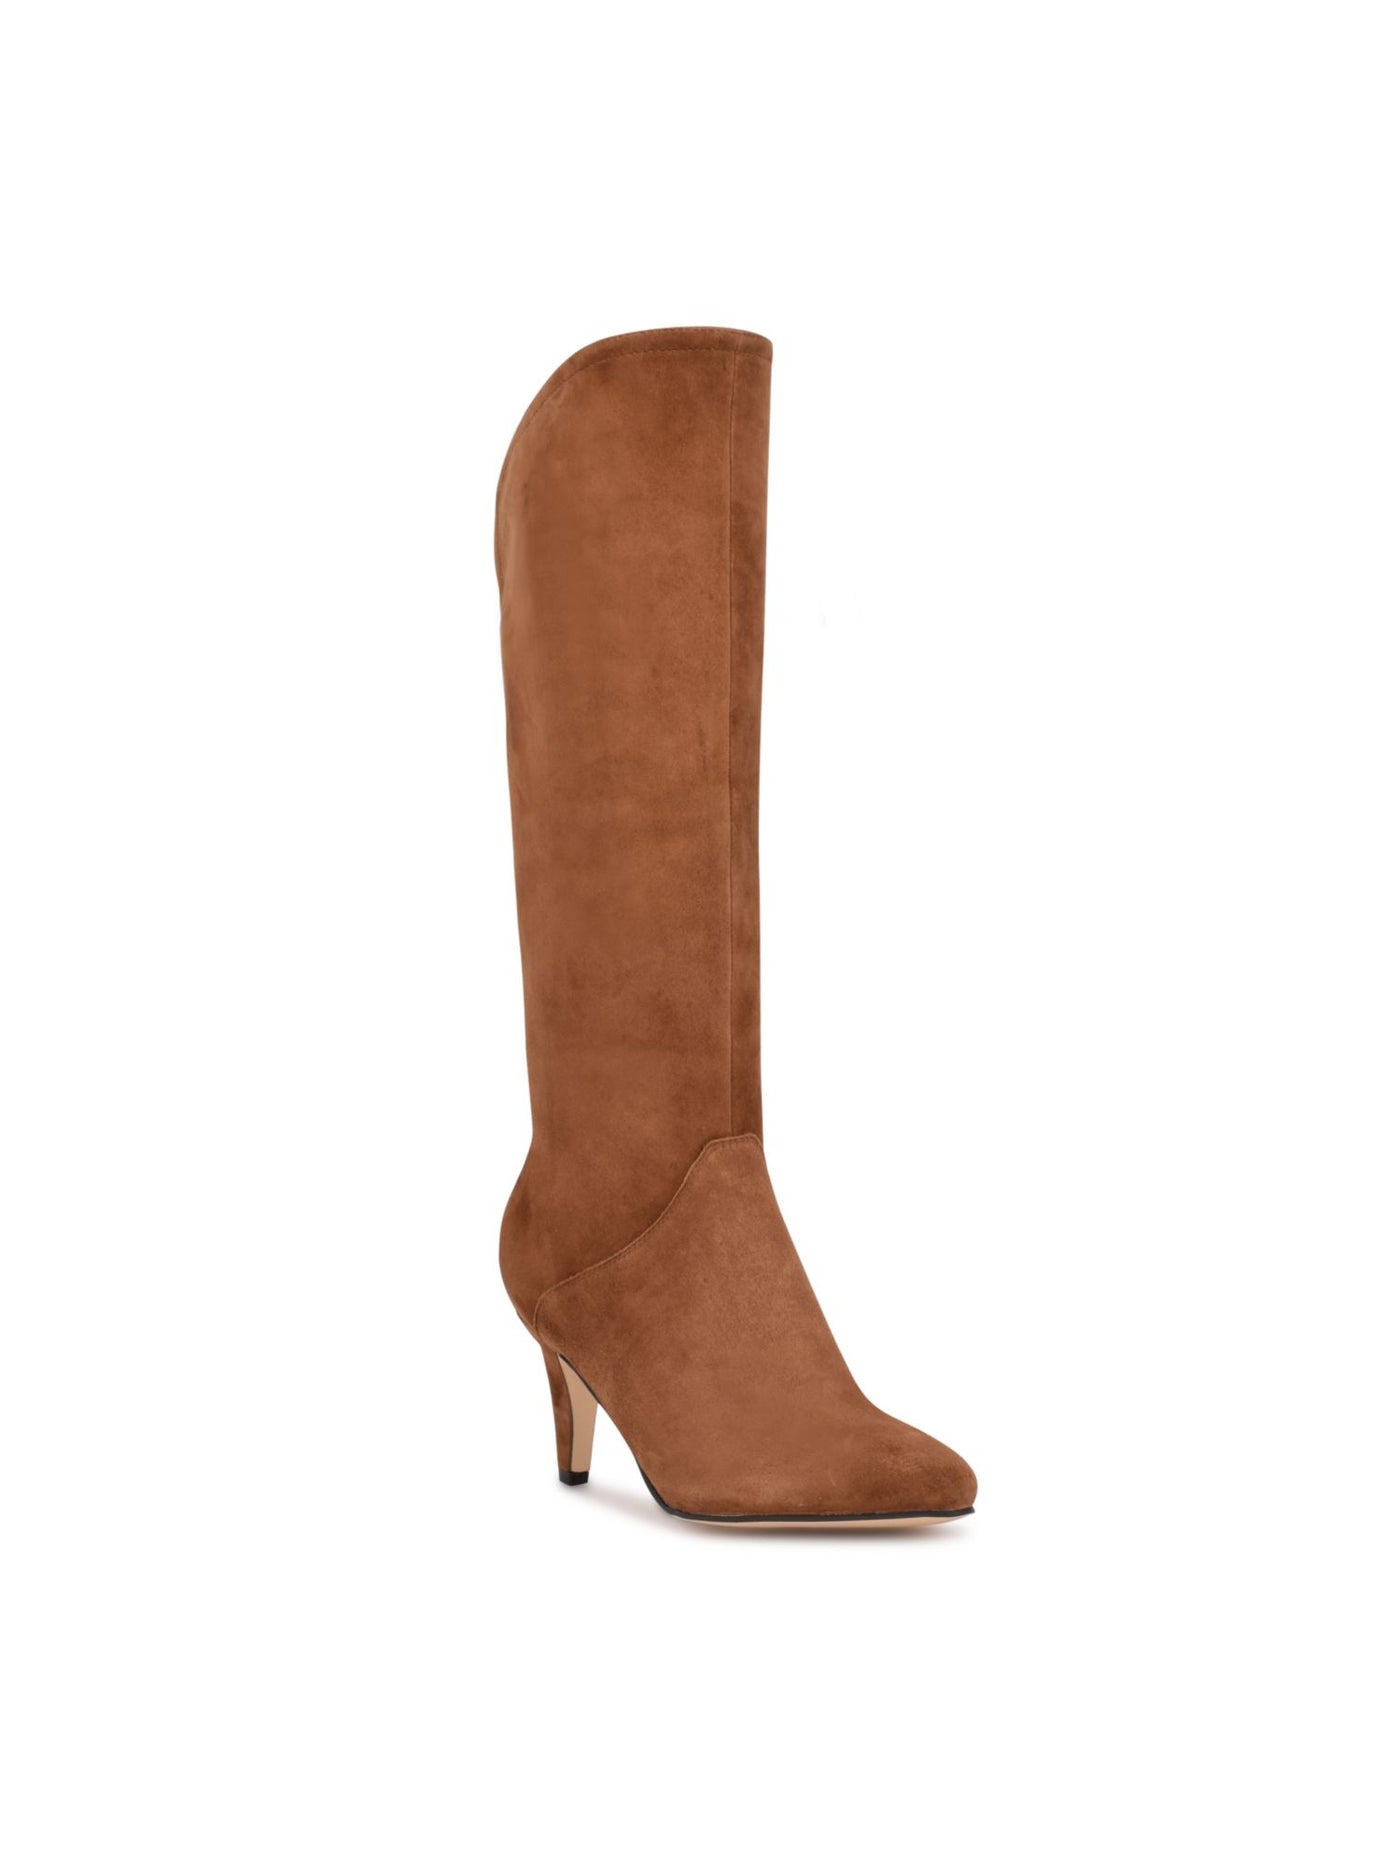 NINE WEST Womens Beige Comfort Danee Pointed Toe Block Heel Zip-Up Leather Dress Boots 11 M